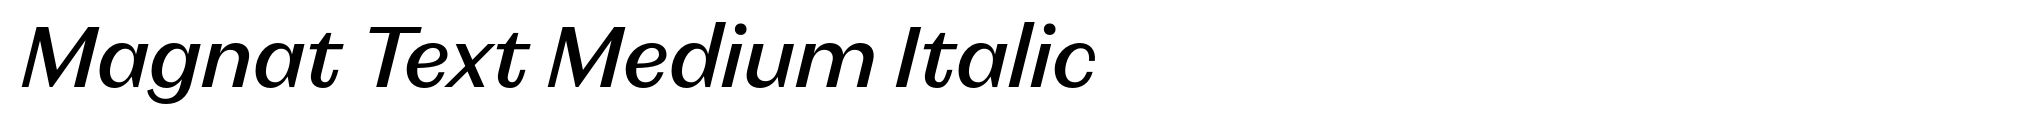 Magnat Text Medium Italic image